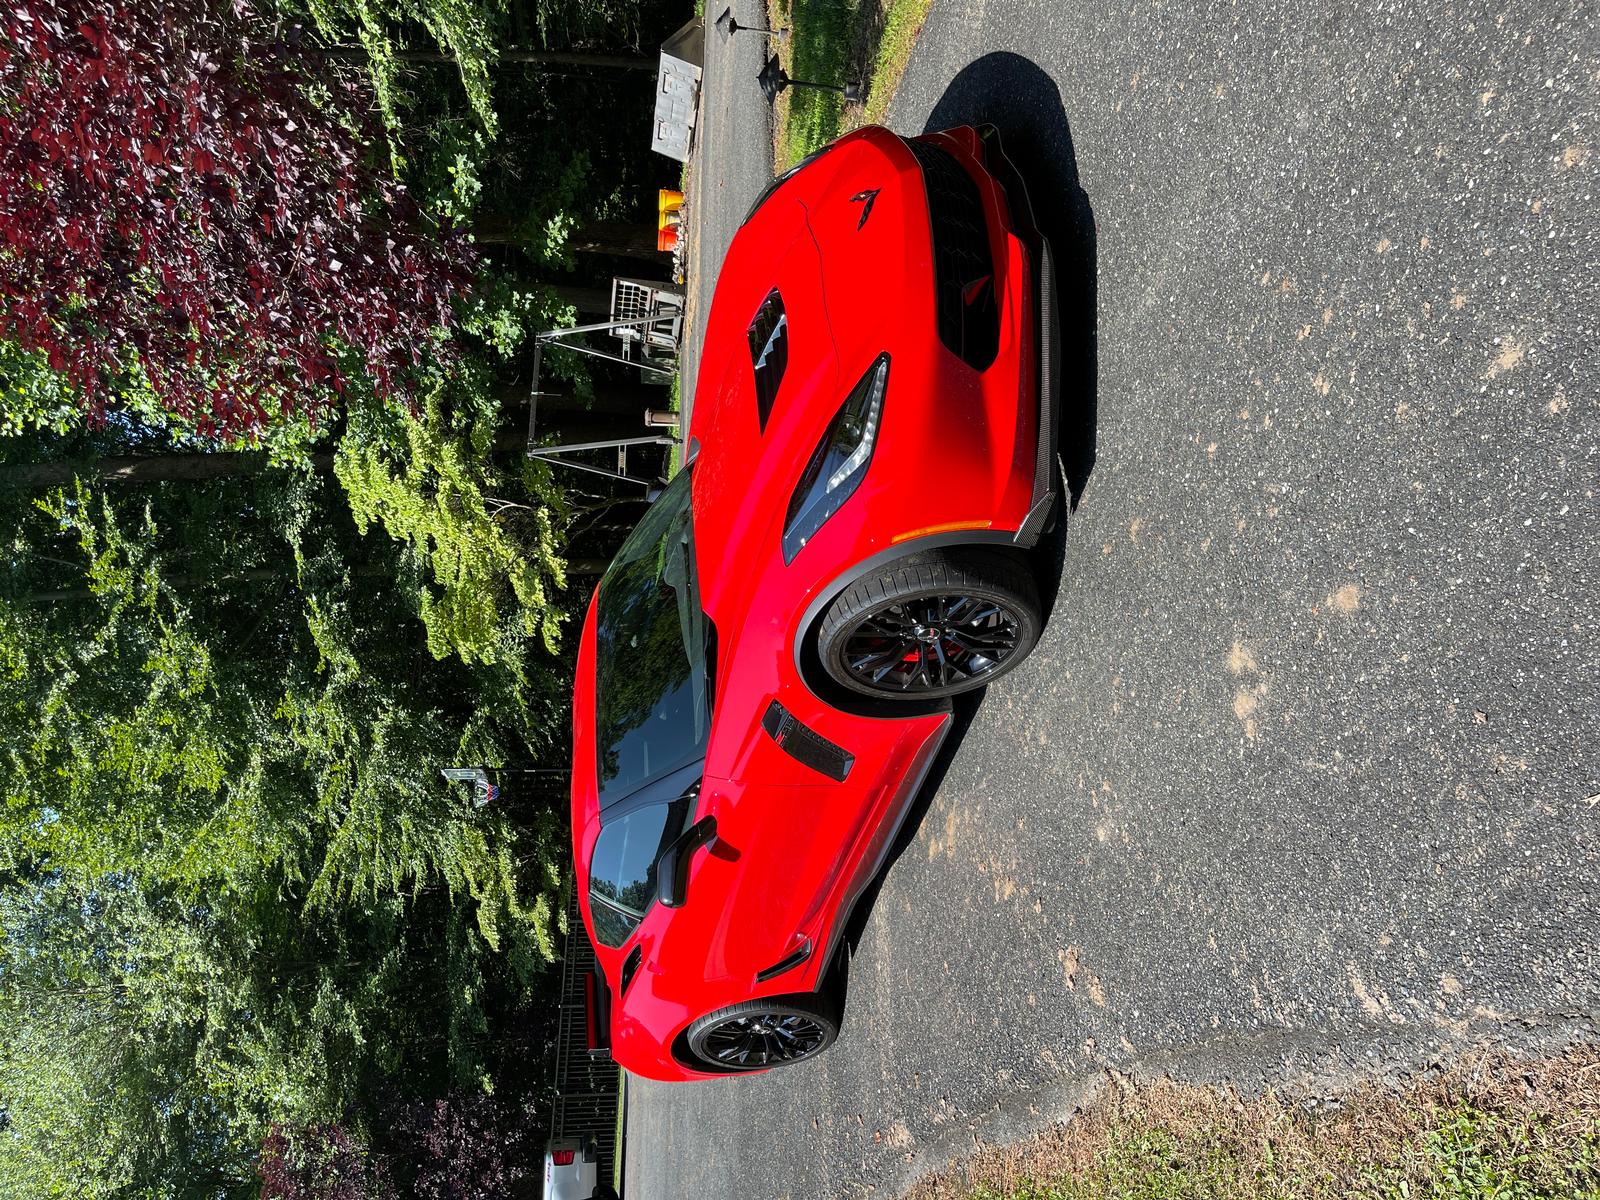 2015 corvette for sale